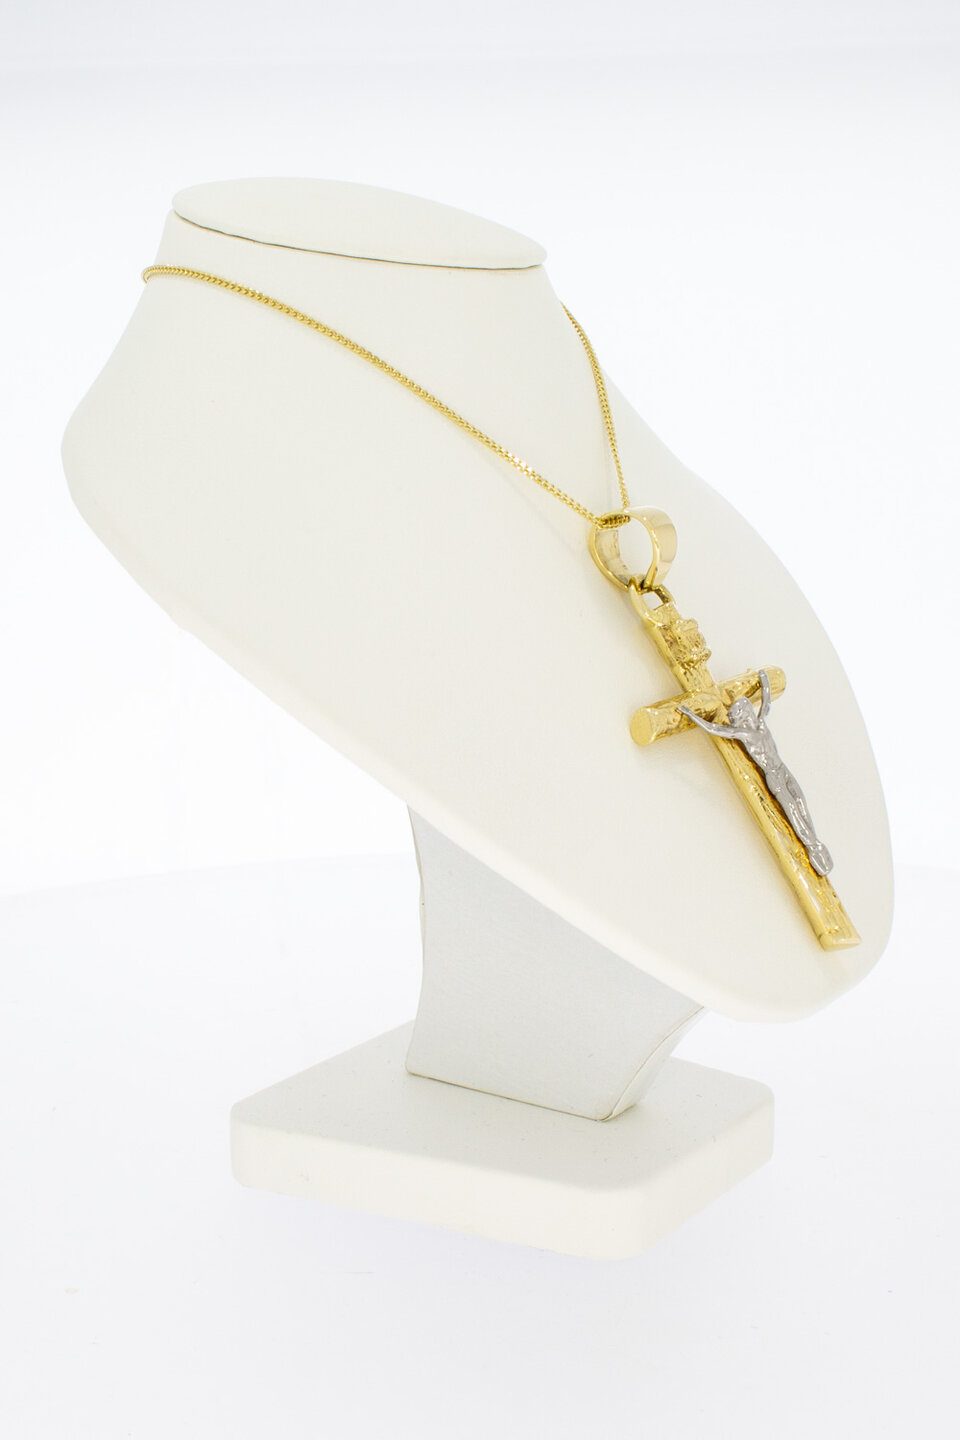 14 karaat gouden Kruis ketting hanger - 6 cm